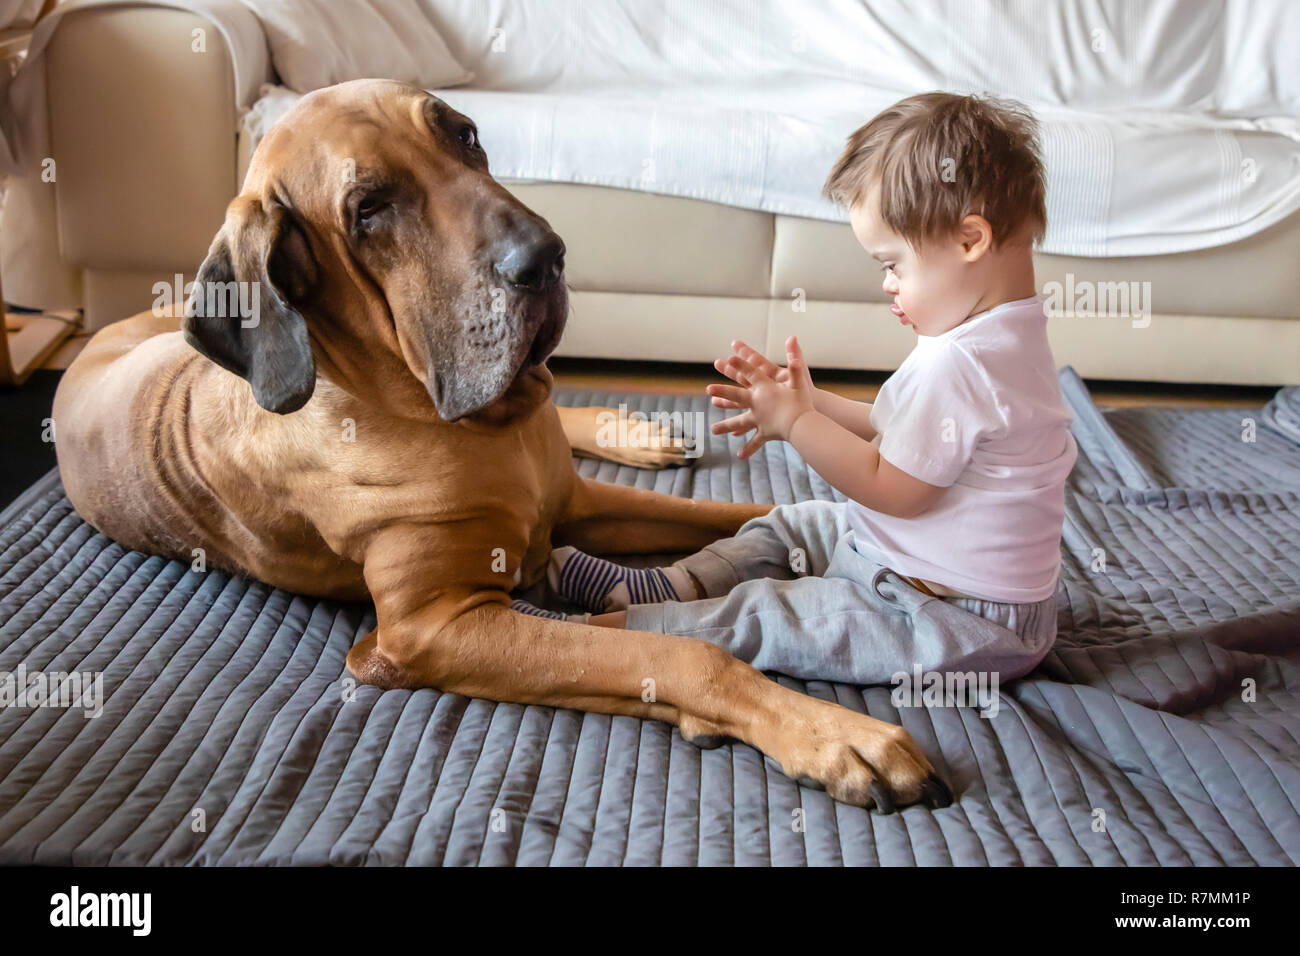 Niedlichen kleinen Jungen mit Down Syndrom spielen mit großer Hund der  Rasse Fila Brasileiro Stockfotografie - Alamy